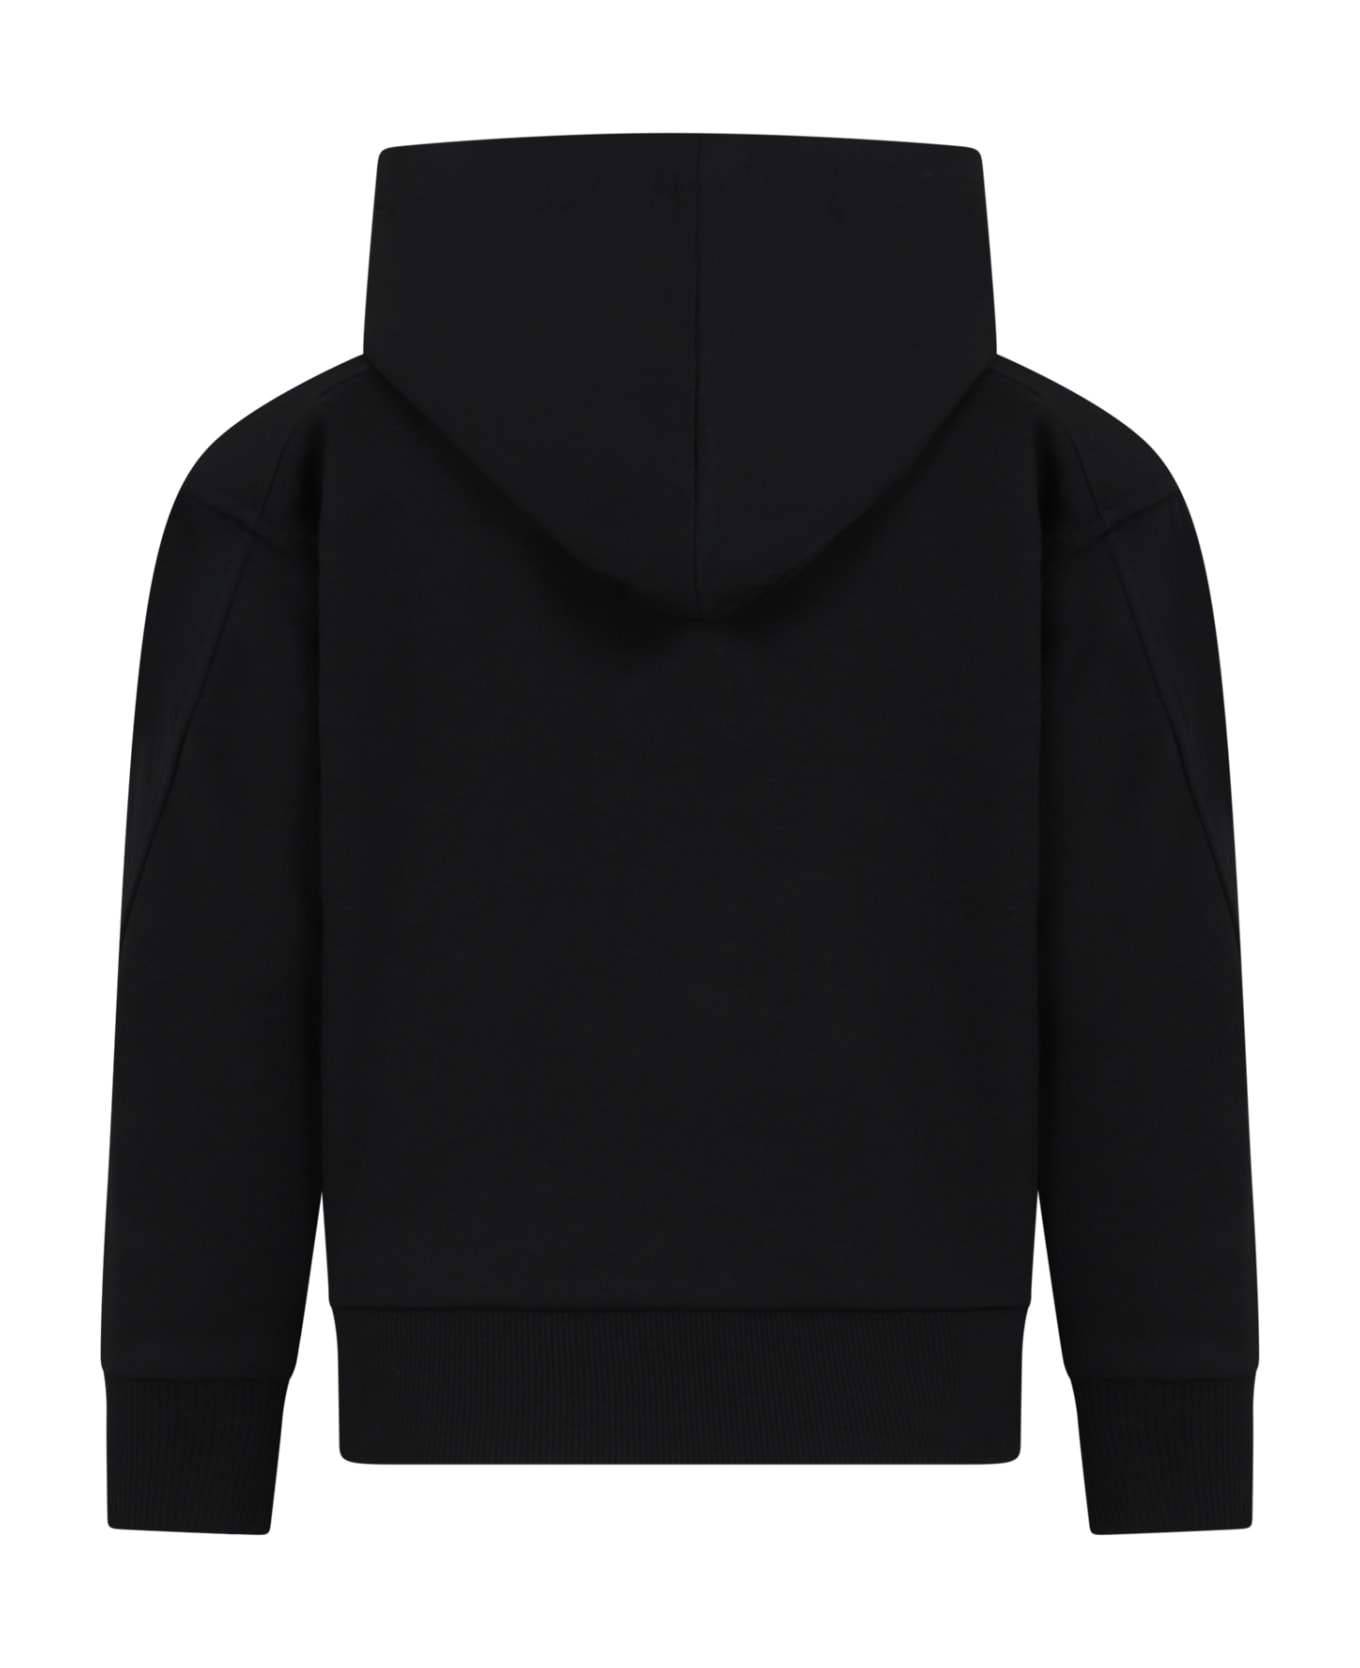 Calvin Klein Black Sweatshirt For Boy With Logo - Black ニットウェア＆スウェットシャツ